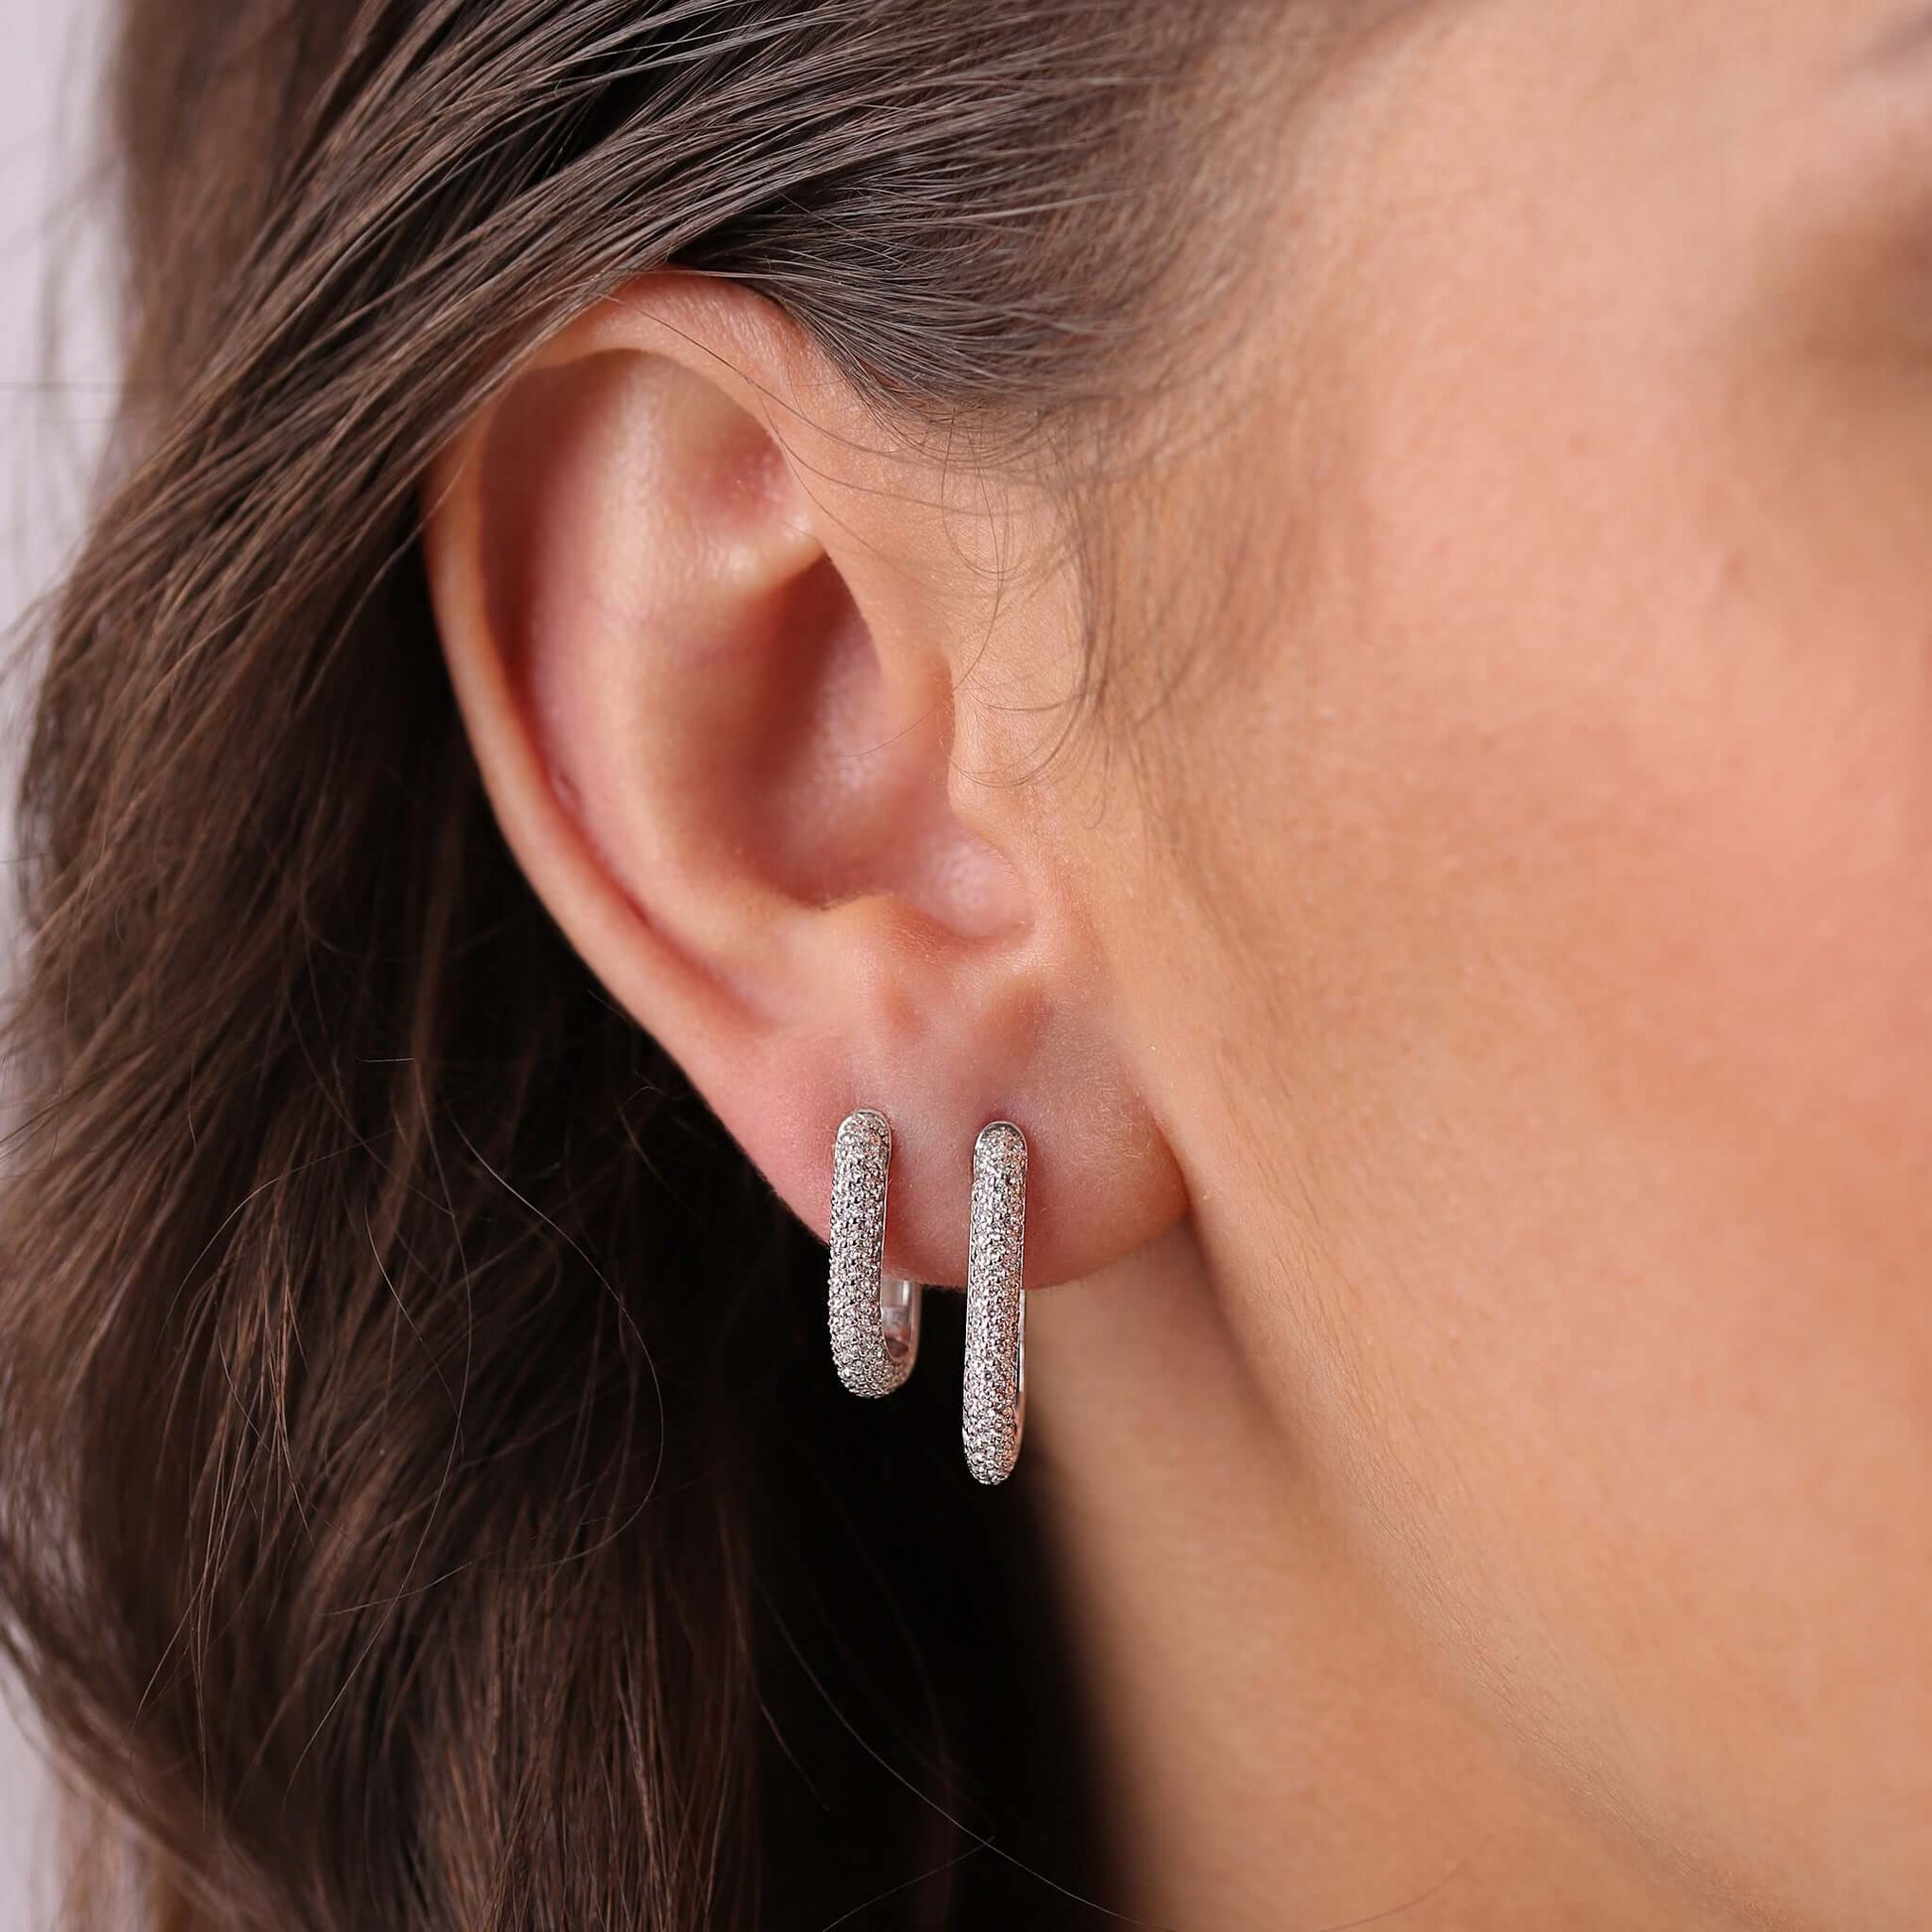 Jewelry Pavé Hoops | Medium Diamond Earrings | 0.69 Cts. | 14K Gold - earring Zengoda Shop online from Artisan